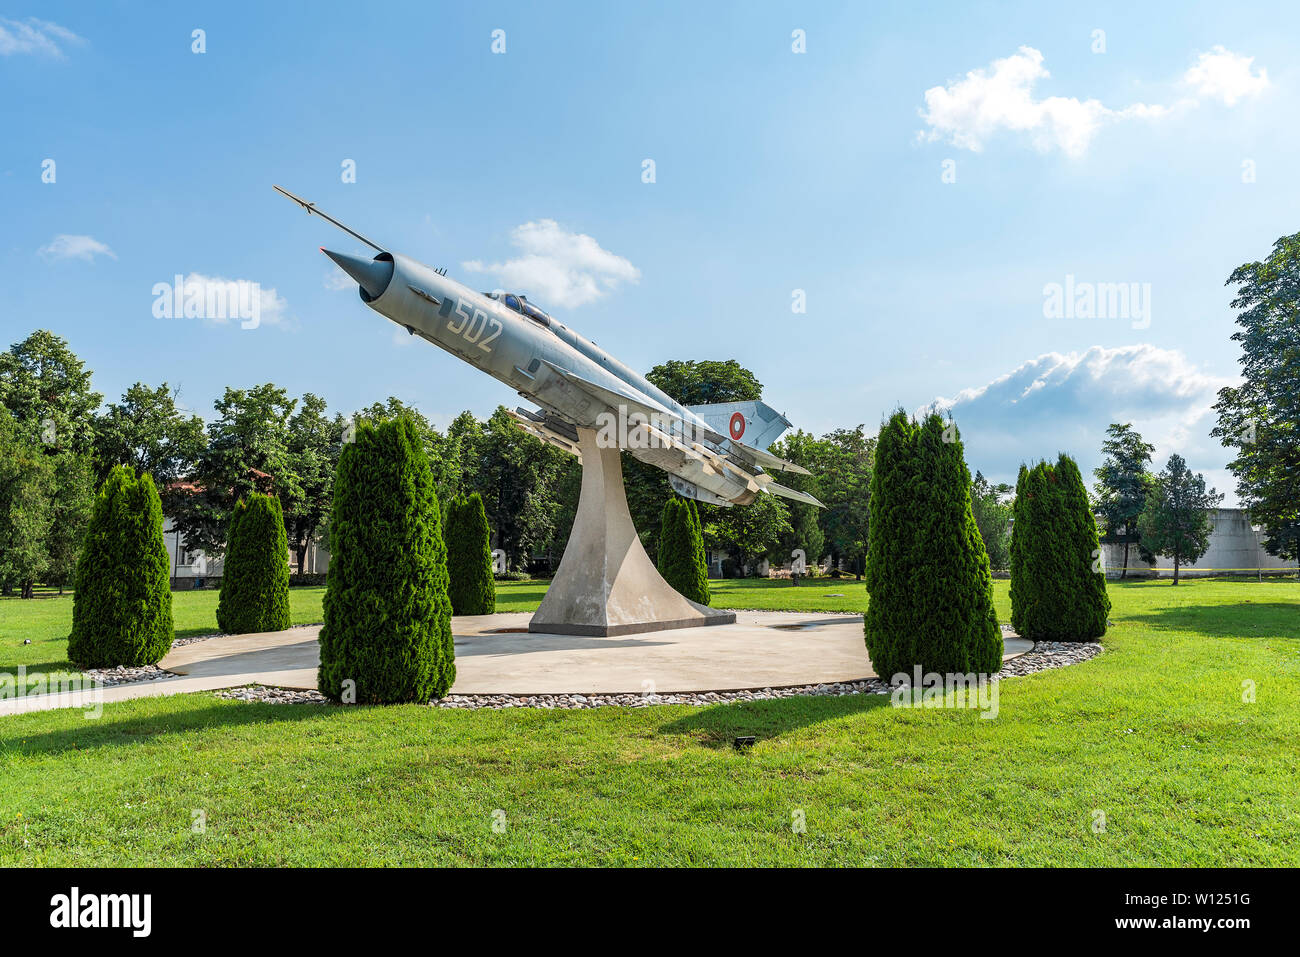 Mig 21 plane in museum of aviation in Graf Ignatievo airport, Bulgaria Stock Photo